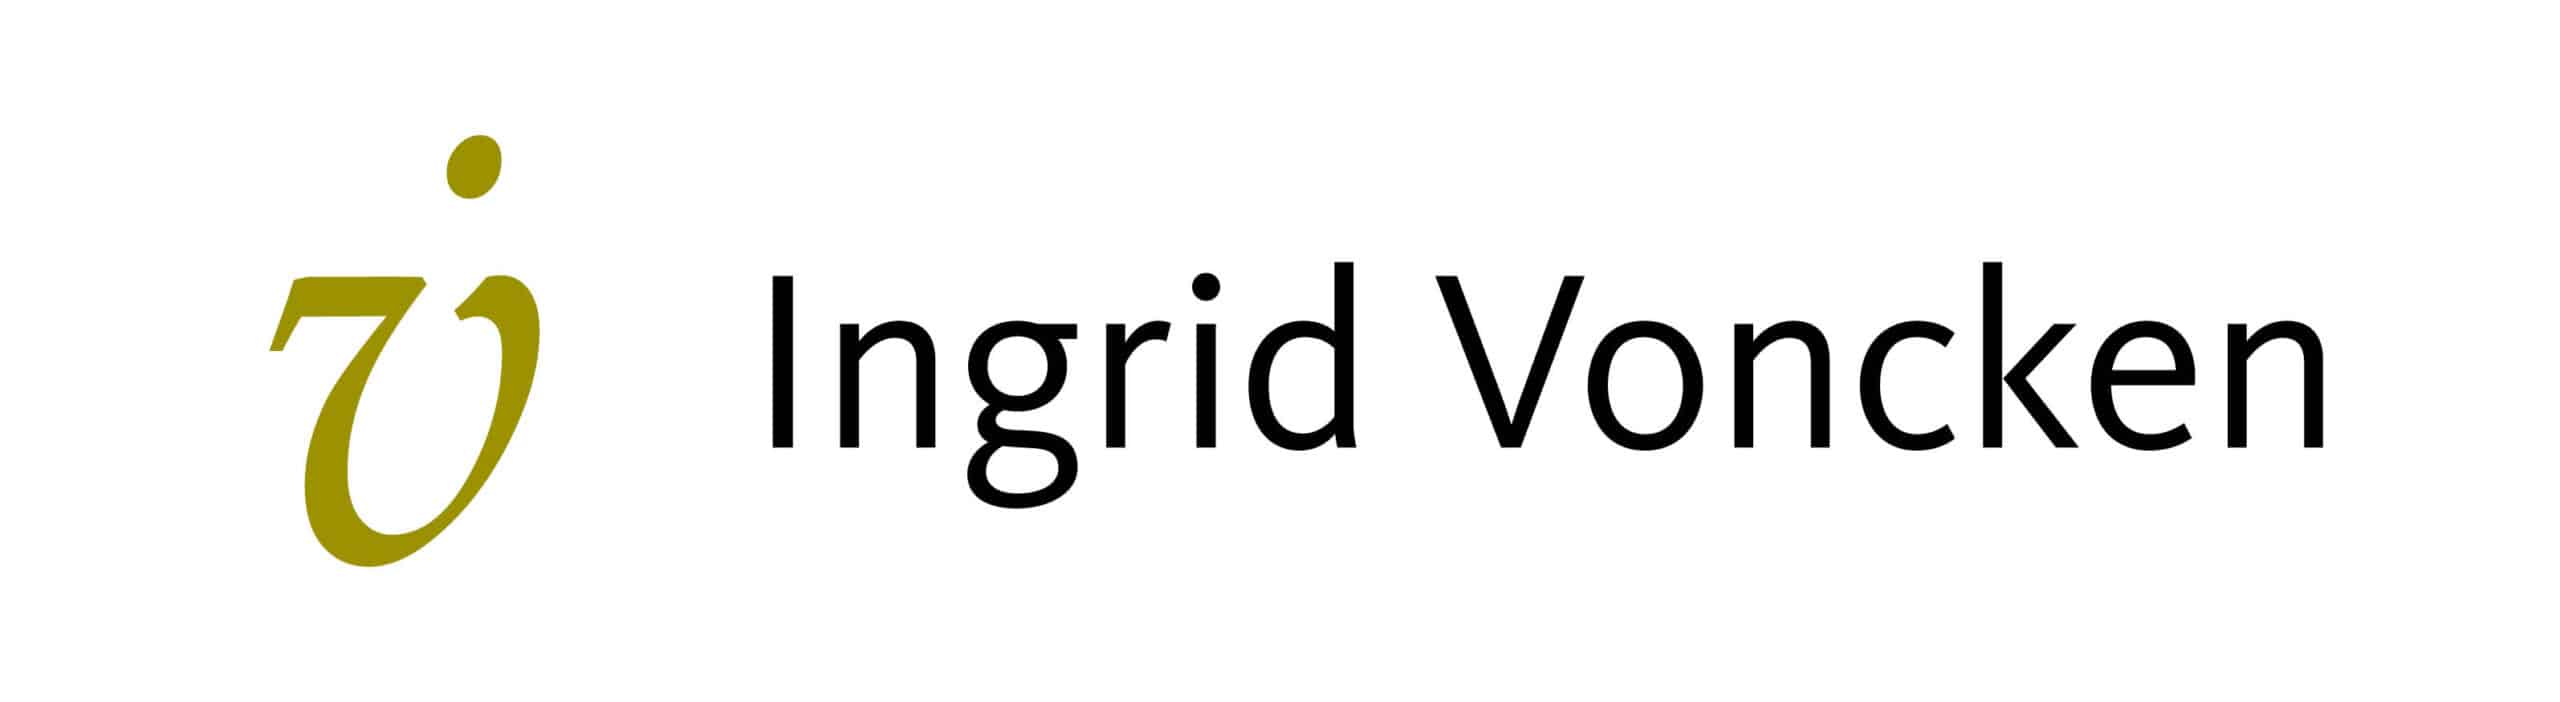 IV_Ingrid Voncken logo